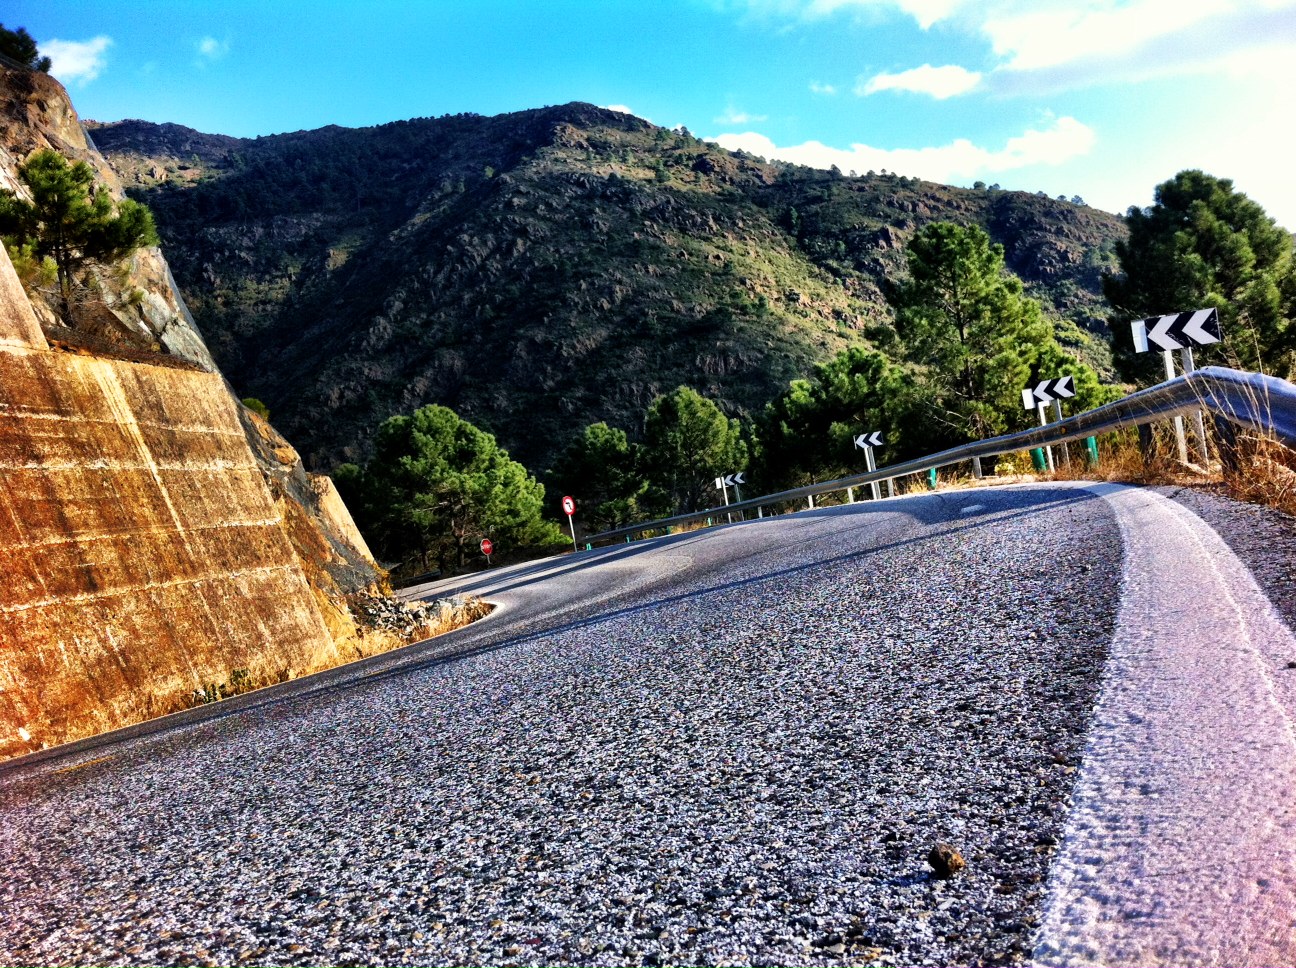 A Scenic Drive From Humilladero to Marbella via Ronda